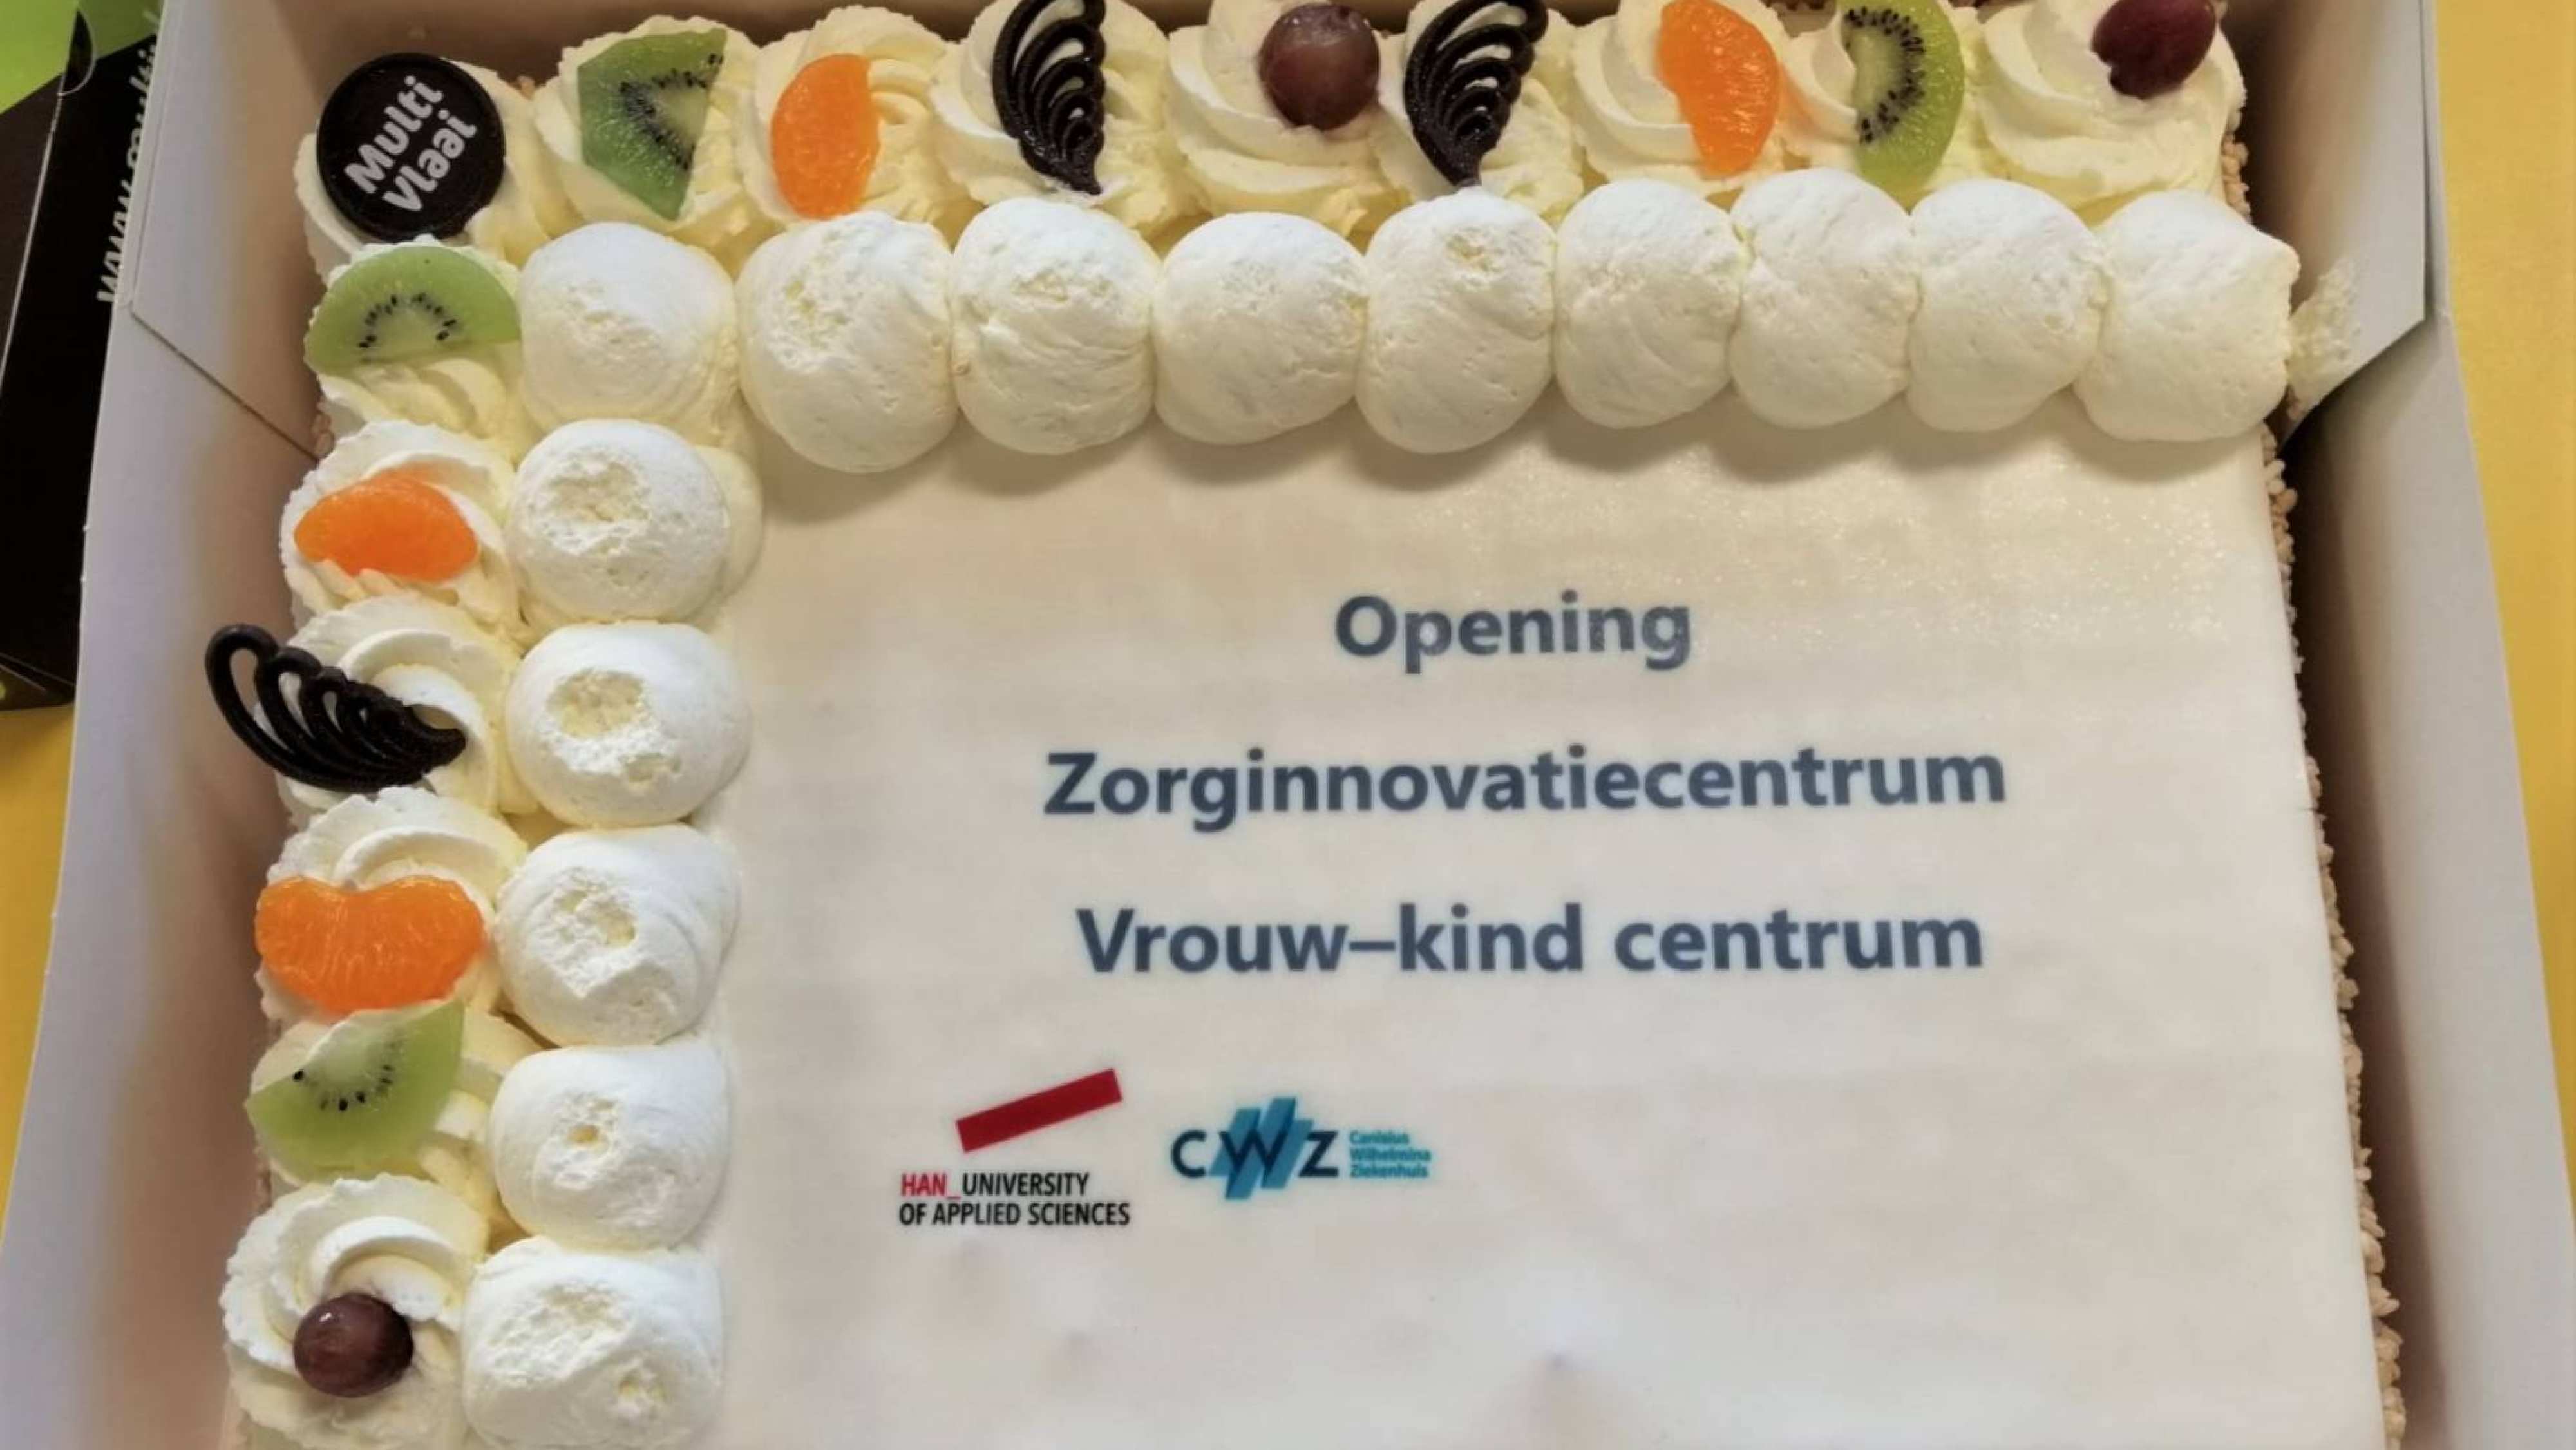 Het Canisius Wilhelmina Ziekenhuis en de Hogeschool van Arnhem openen het eerste zorg innovatie centrum. Een feestelijk moment waar taart niet mocht ontbreken.